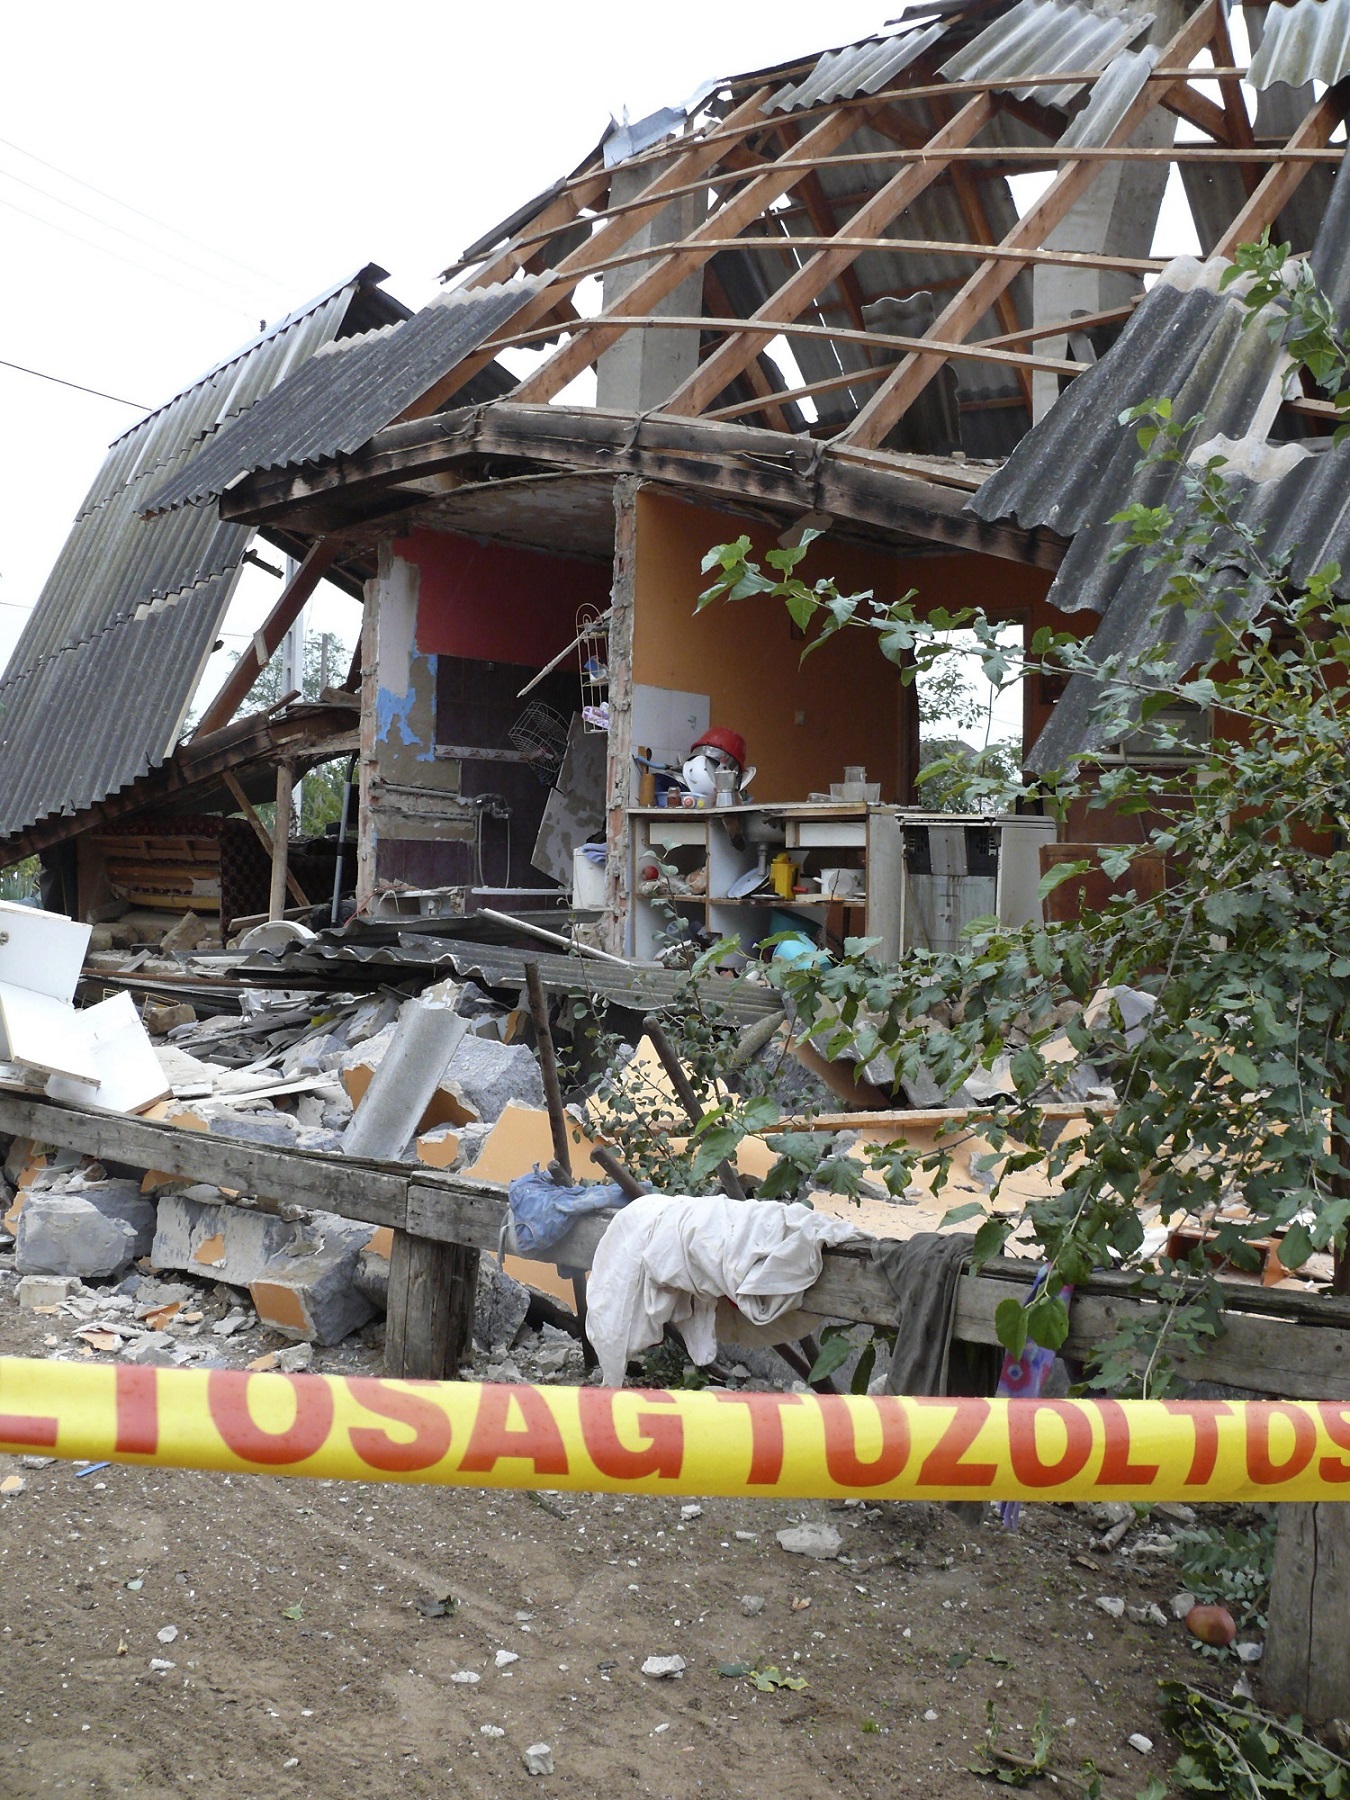 Nyírkarász, 2015. október 11. Lakhatatlanná vált családi ház, amelyben felrobbant egy gázpalack 2015. október 11-én. A robbanásban egy ember súlyosan megsérült. MTI Fotó: Taipusz Attila